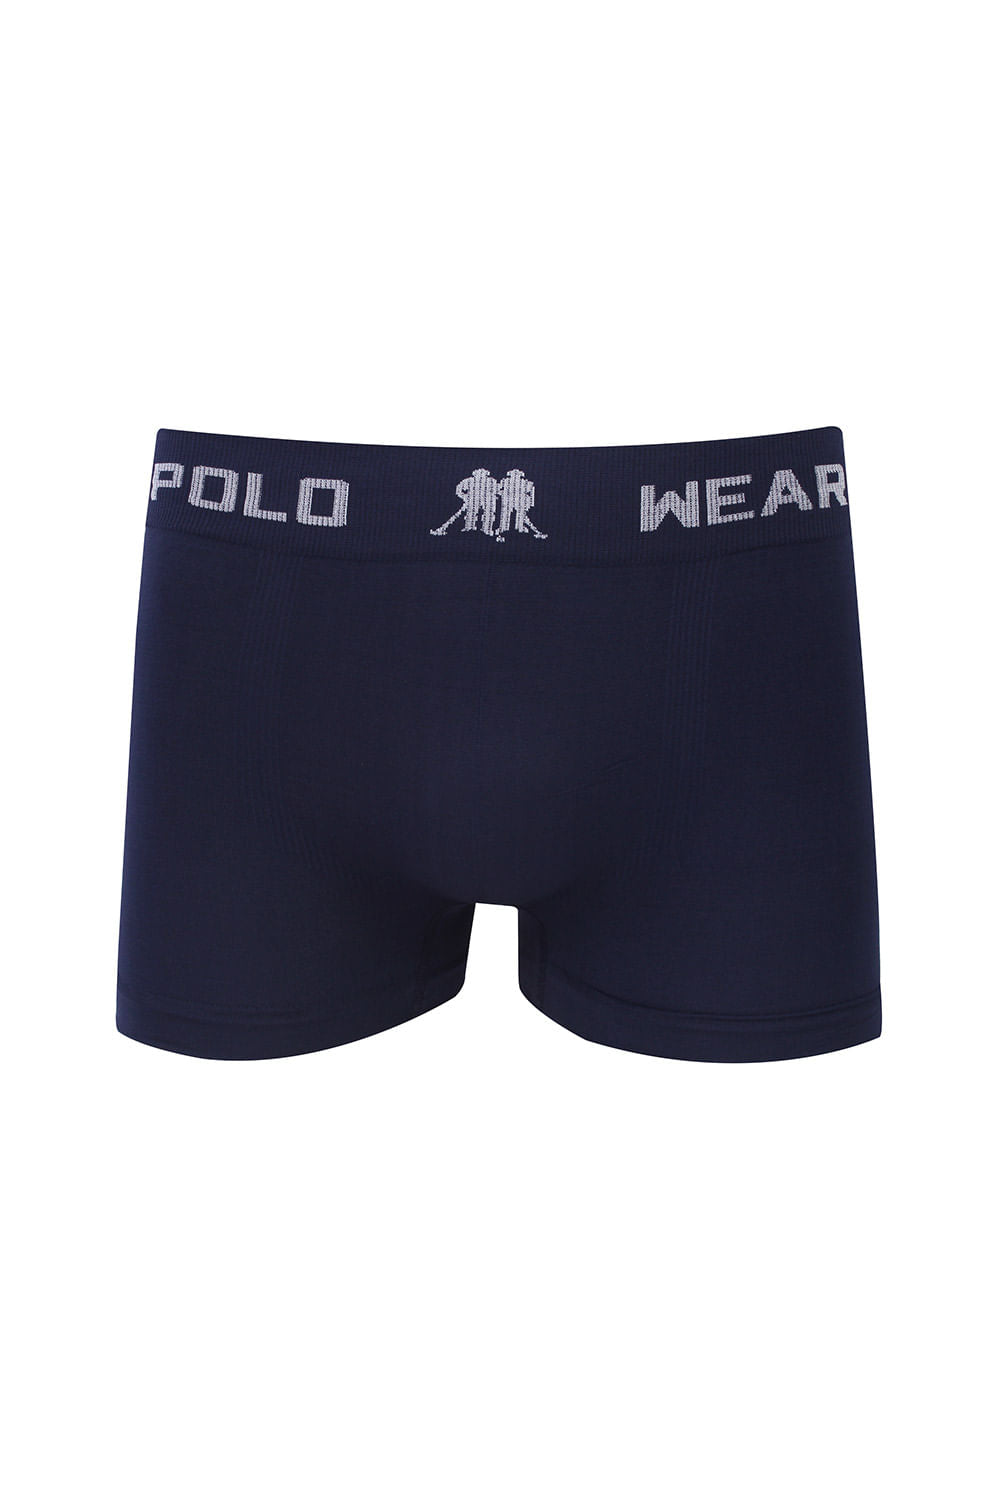 Kit 12 Cuecas Masculinas Boxer Microfibra Polo Wear Sortido ®